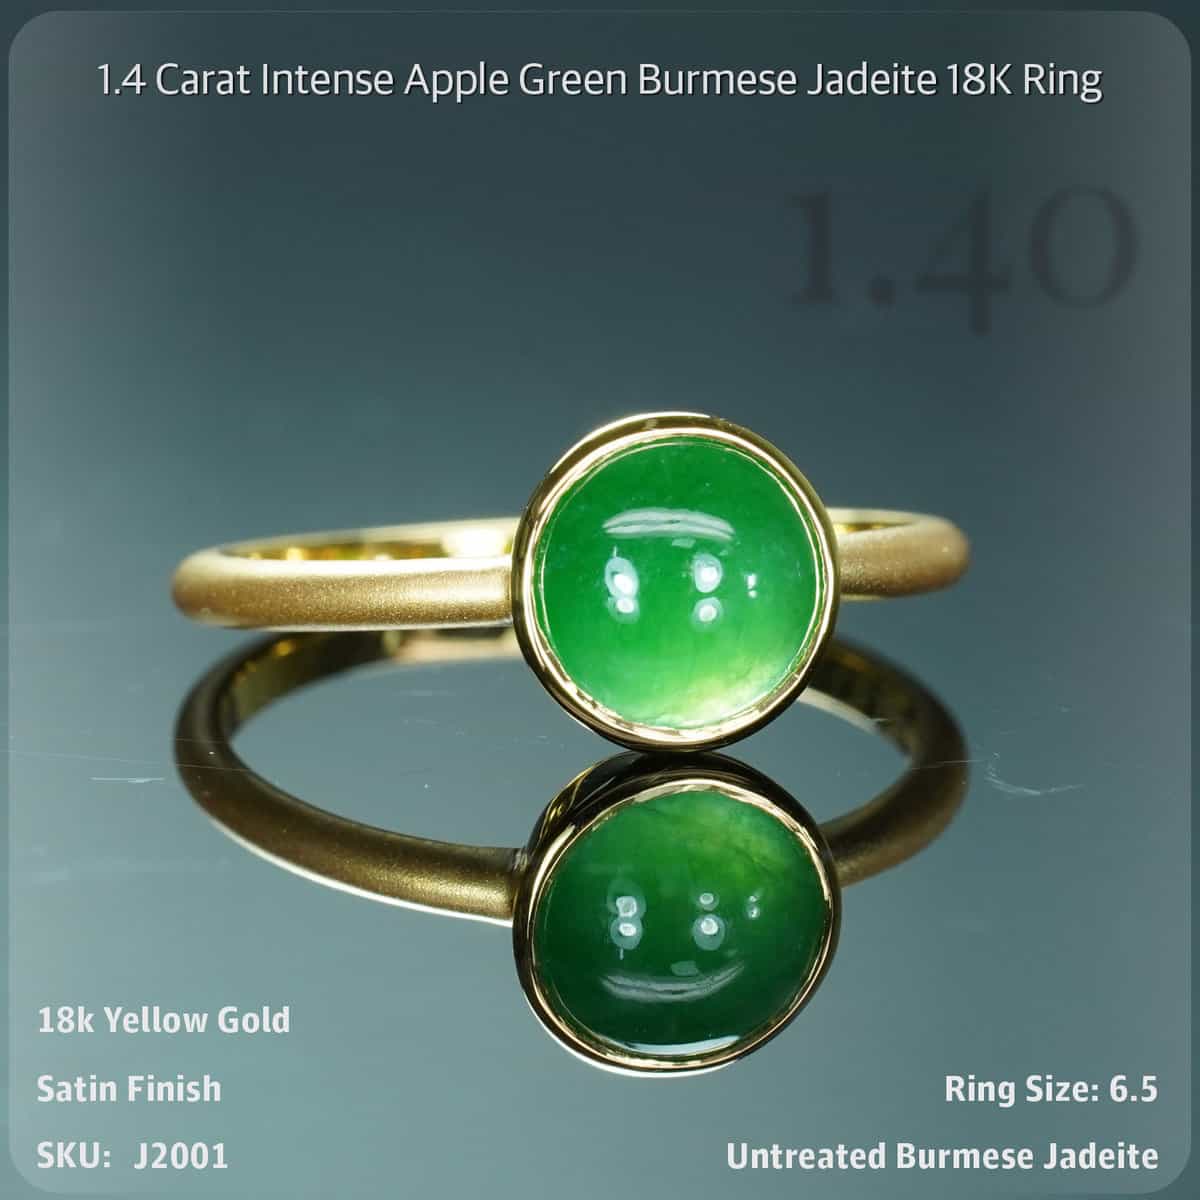 1.4 Carat Intense Apple Green Burmese Jadeite 18K Ring